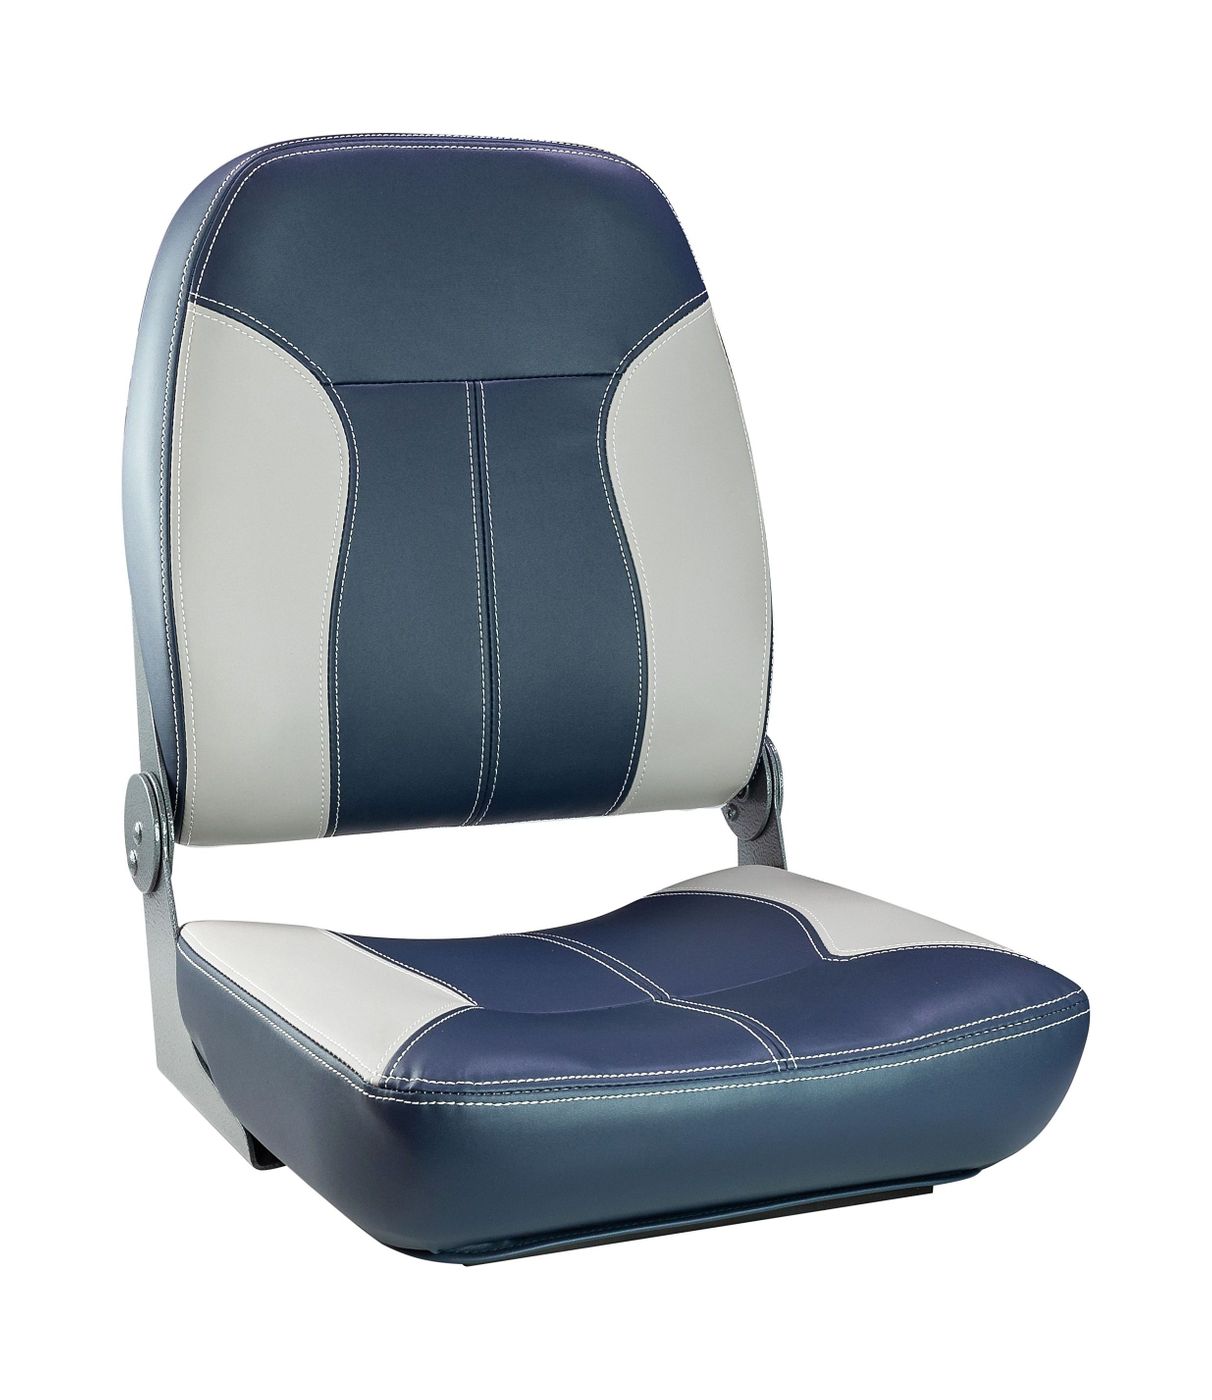 Кресло складное мягкое SPORT с высокой спинкой, синий/серый 1040513 кресло с болстером delux sport flip up обивка белый синий винил 12182wb mr